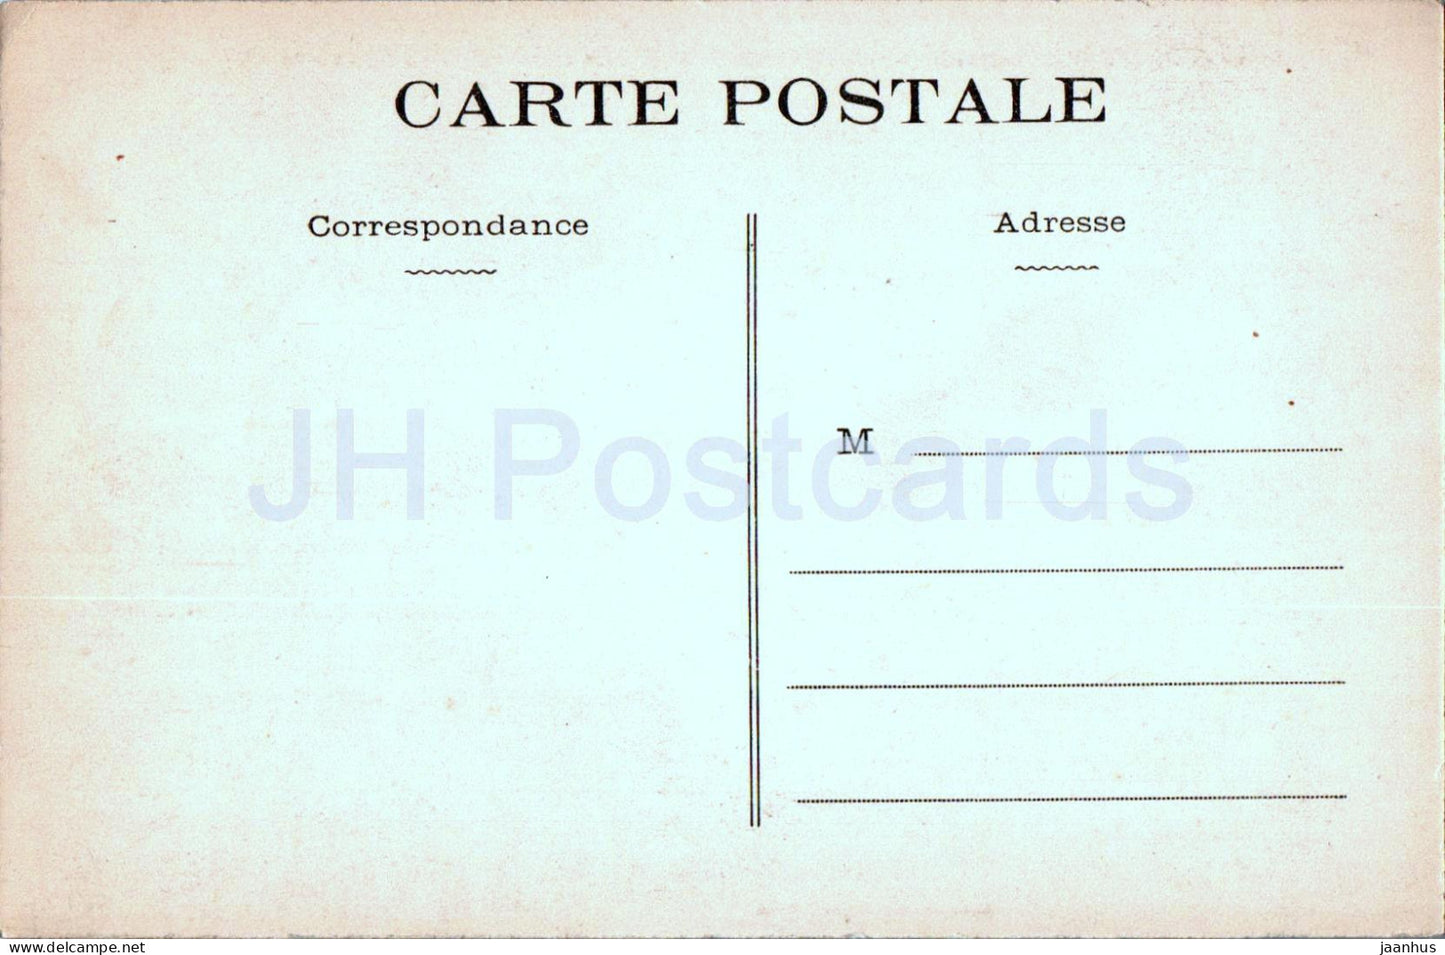 Auray - Vue d'ensemble de St Goustan et de la Riviere du Loc'h - 4014 - alte Postkarte - Frankreich - unbenutzt 